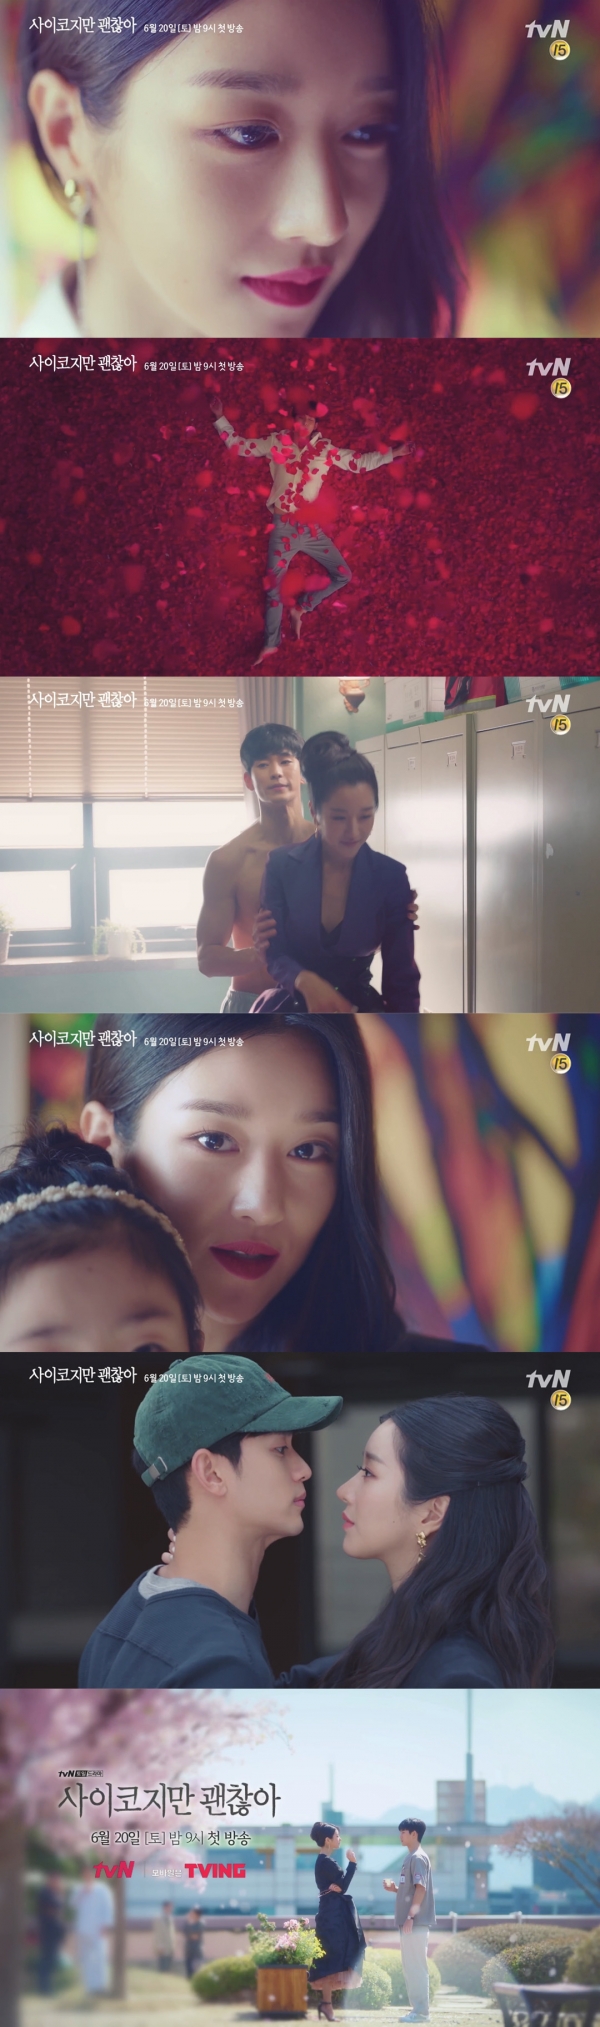 tvN 주말드라마 '사이코지만 괜찮아' 3차 티저 영상 캡처